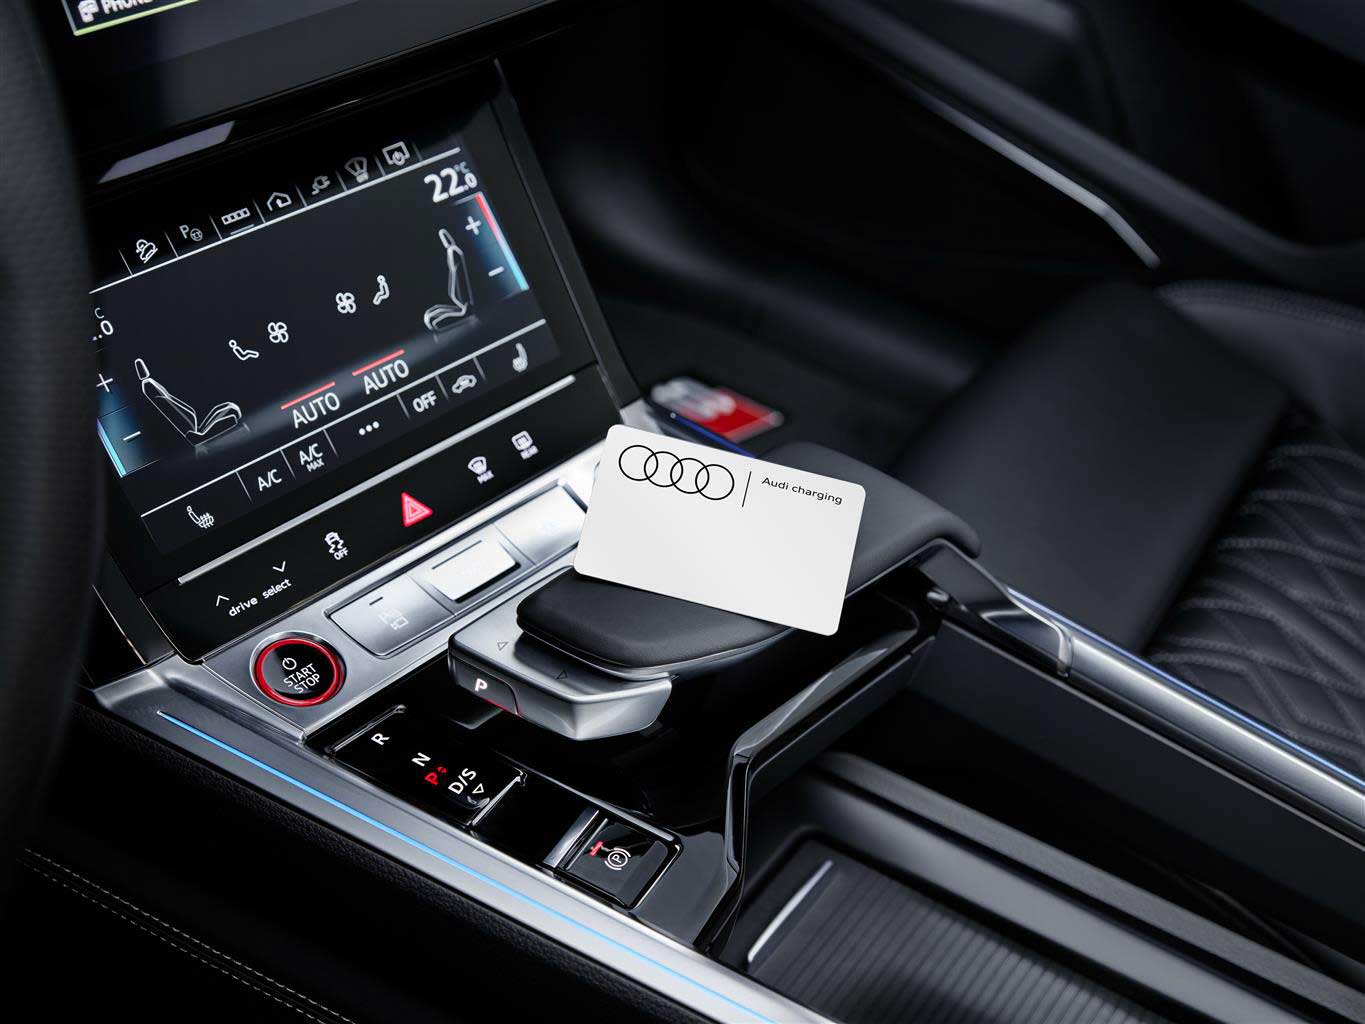 Audi charging, il nuovo servizio di ricarica Audi